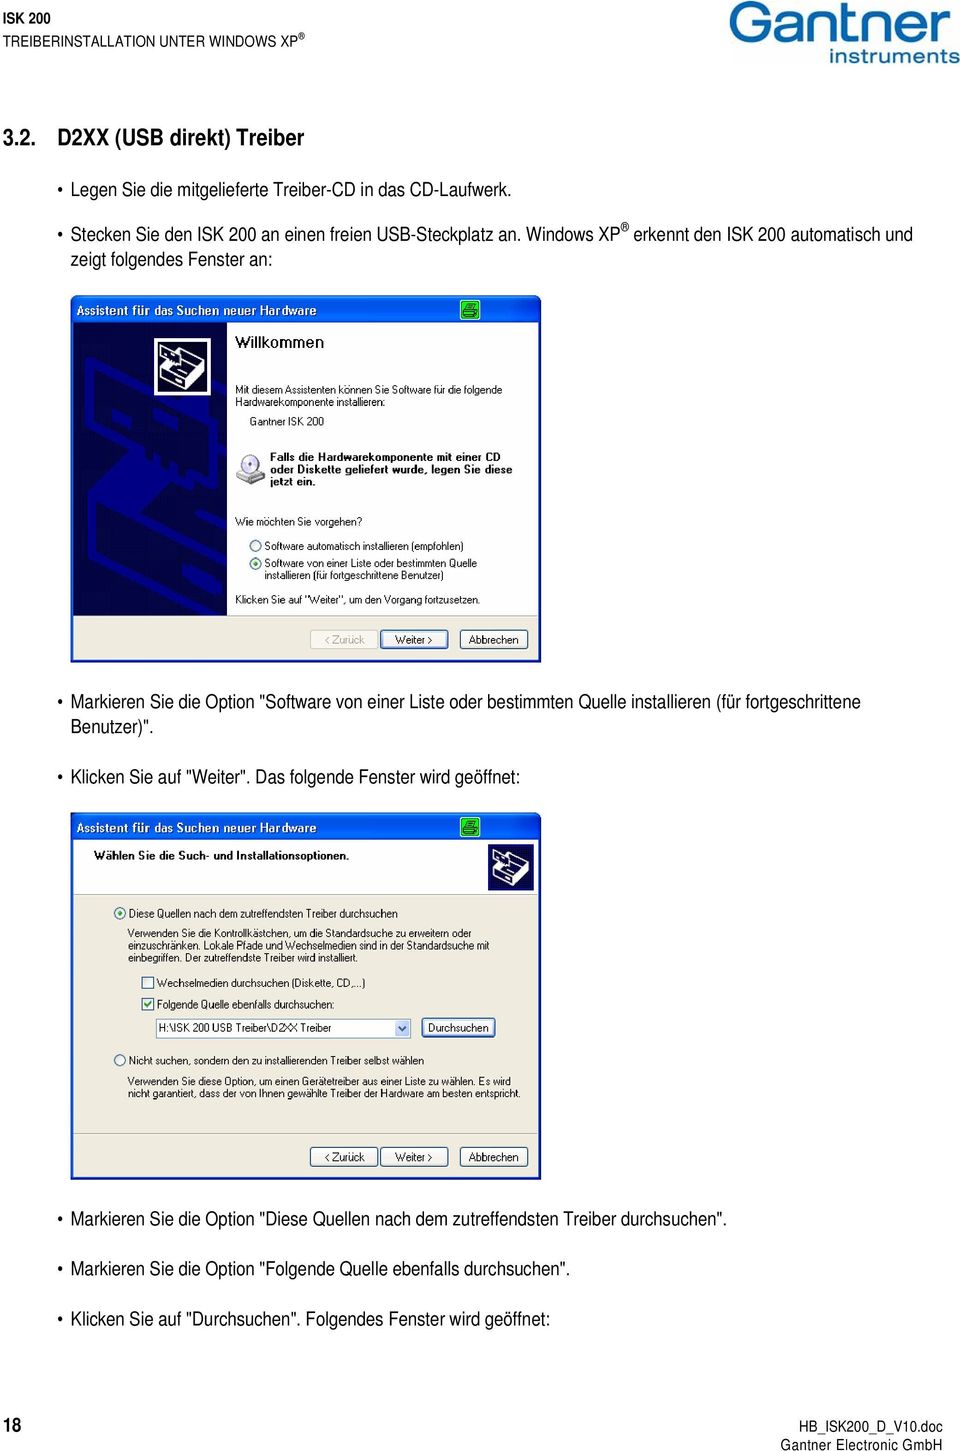 Windows XP erkennt den ISK 200 automatisch und zeigt folgendes Fenster an: Markieren Sie die Option "Software von einer Liste oder bestimmten Quelle installieren (für